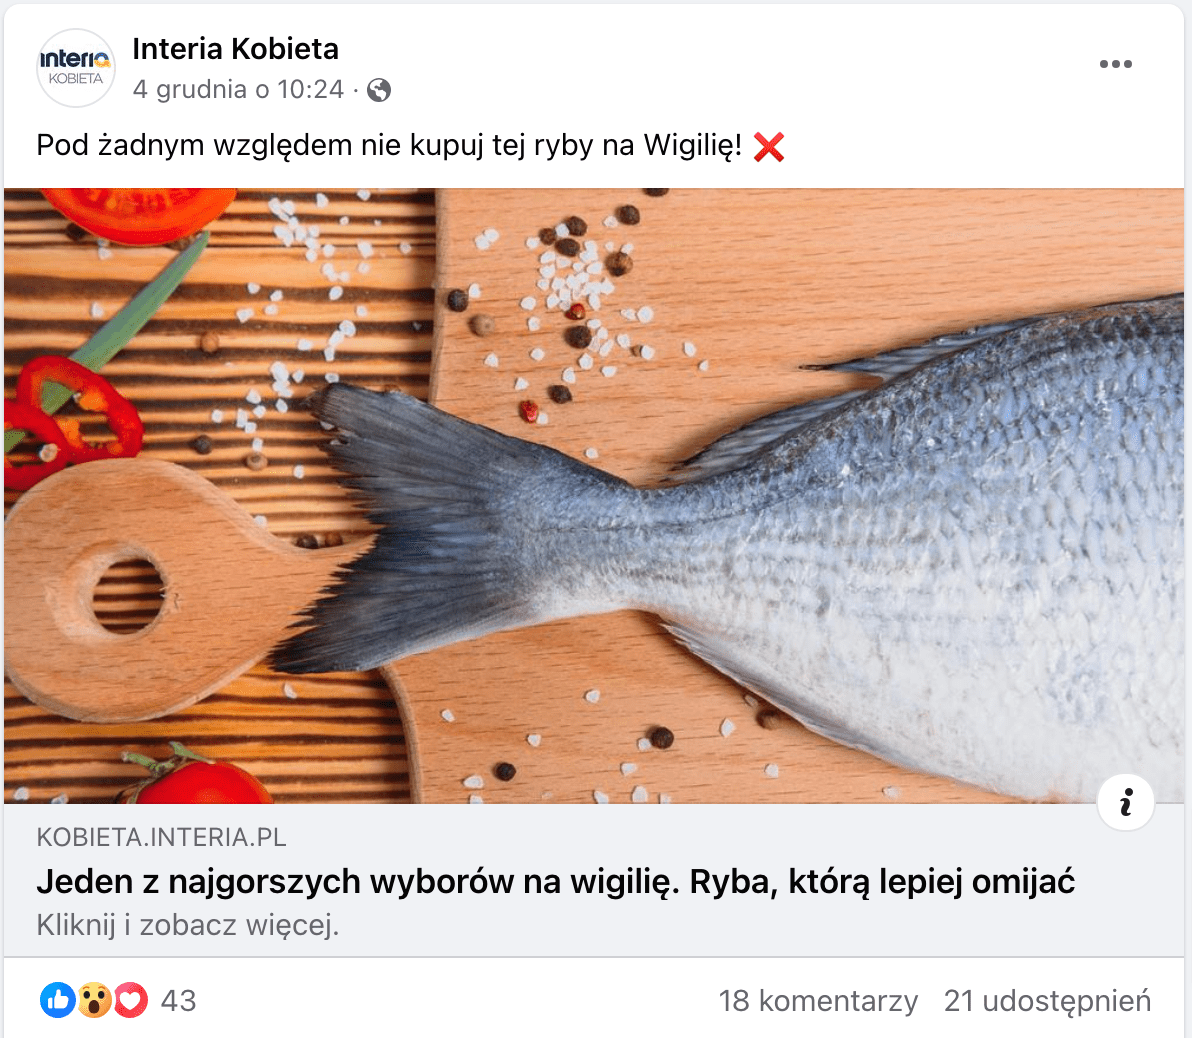 Zrzut ekranu posta na Facebooku. Na załączonym do artykułu zdjęciu widzimy rybę na desce do krojenia. Ma szaro-białe łuski. Posypano ją gruboziarnistą solą i pieprzem. Obok położono paprykę i pomidory. Na posta zareagowało 43 użytkowników, 18 napisało komentarz, a 21 udostępniło posta.